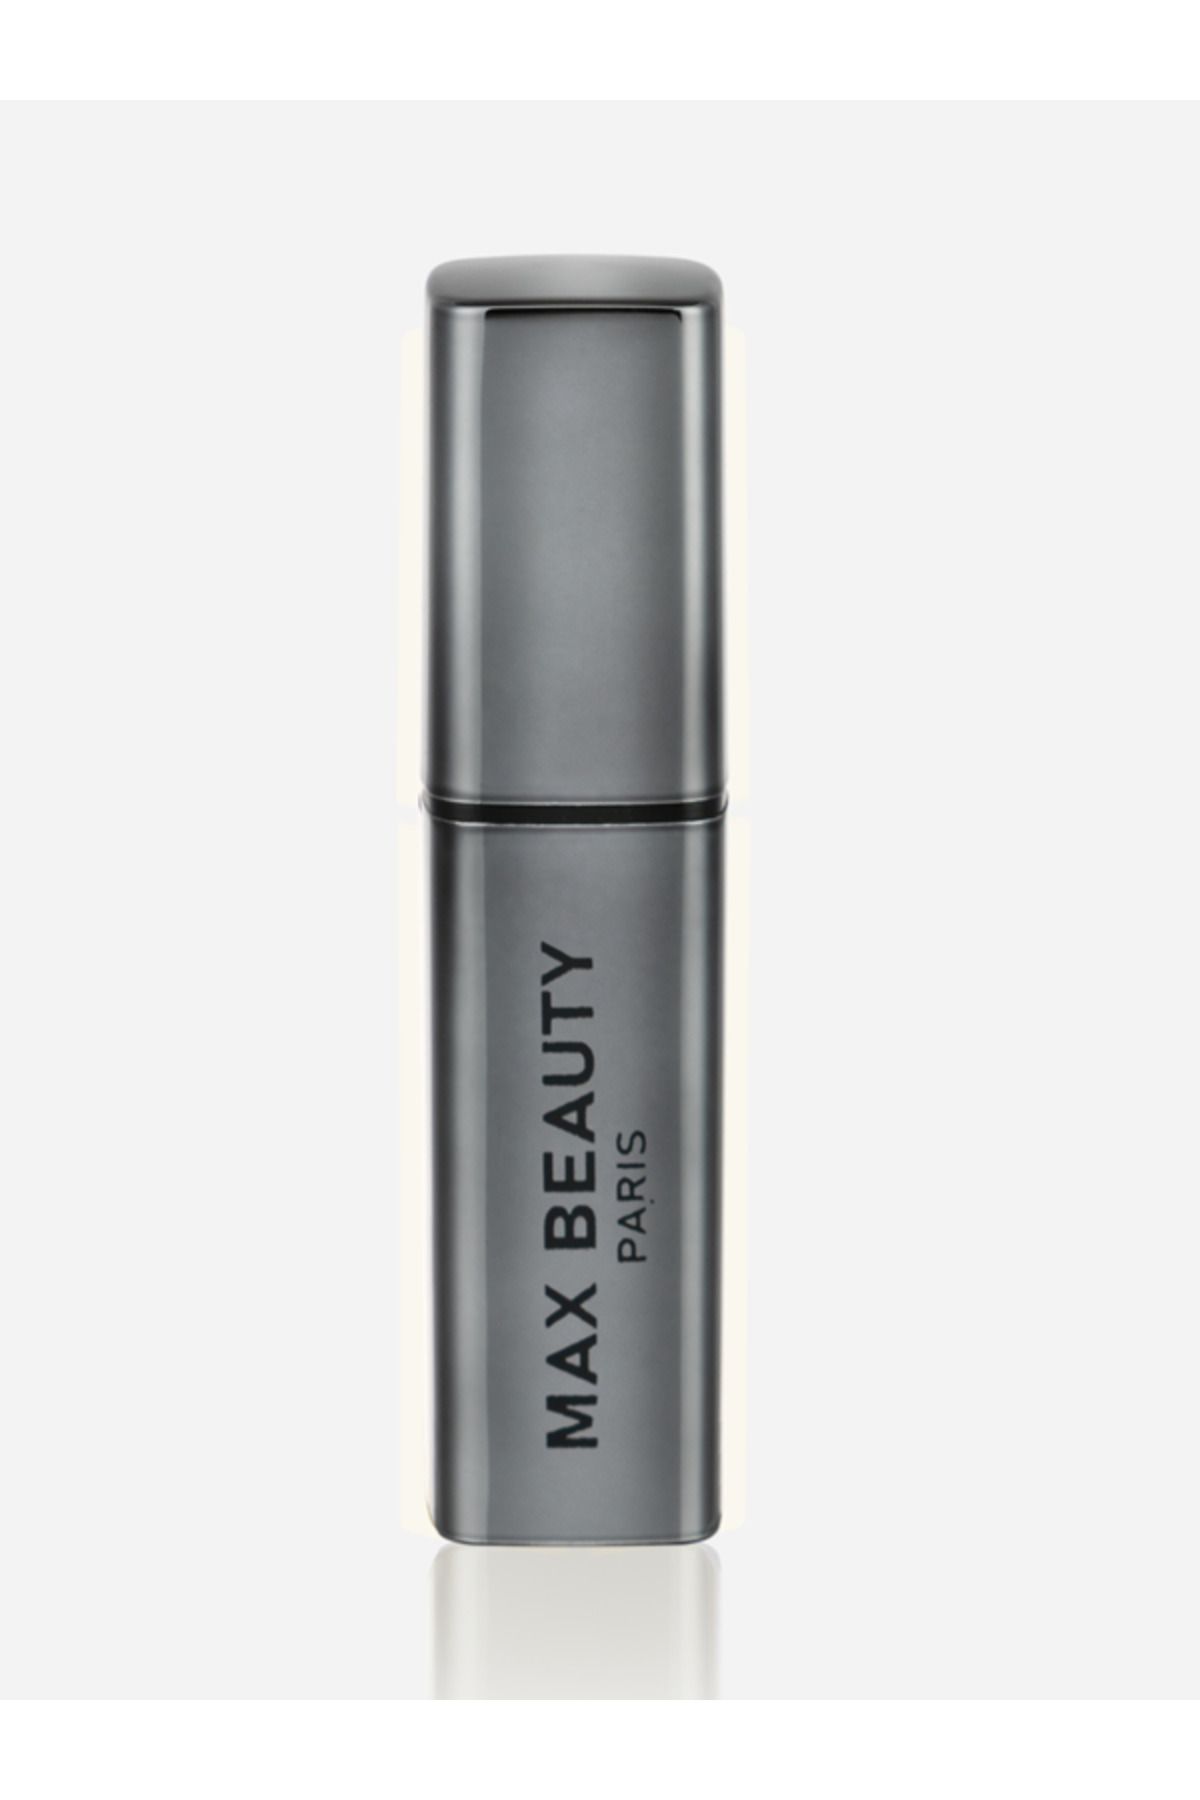 max beauty paris Taşınabilir Doldurulabilir Seyahat Boy Lüx Boş Parfüm Şişesi 8 ML  Antrasit(Füme) Renk